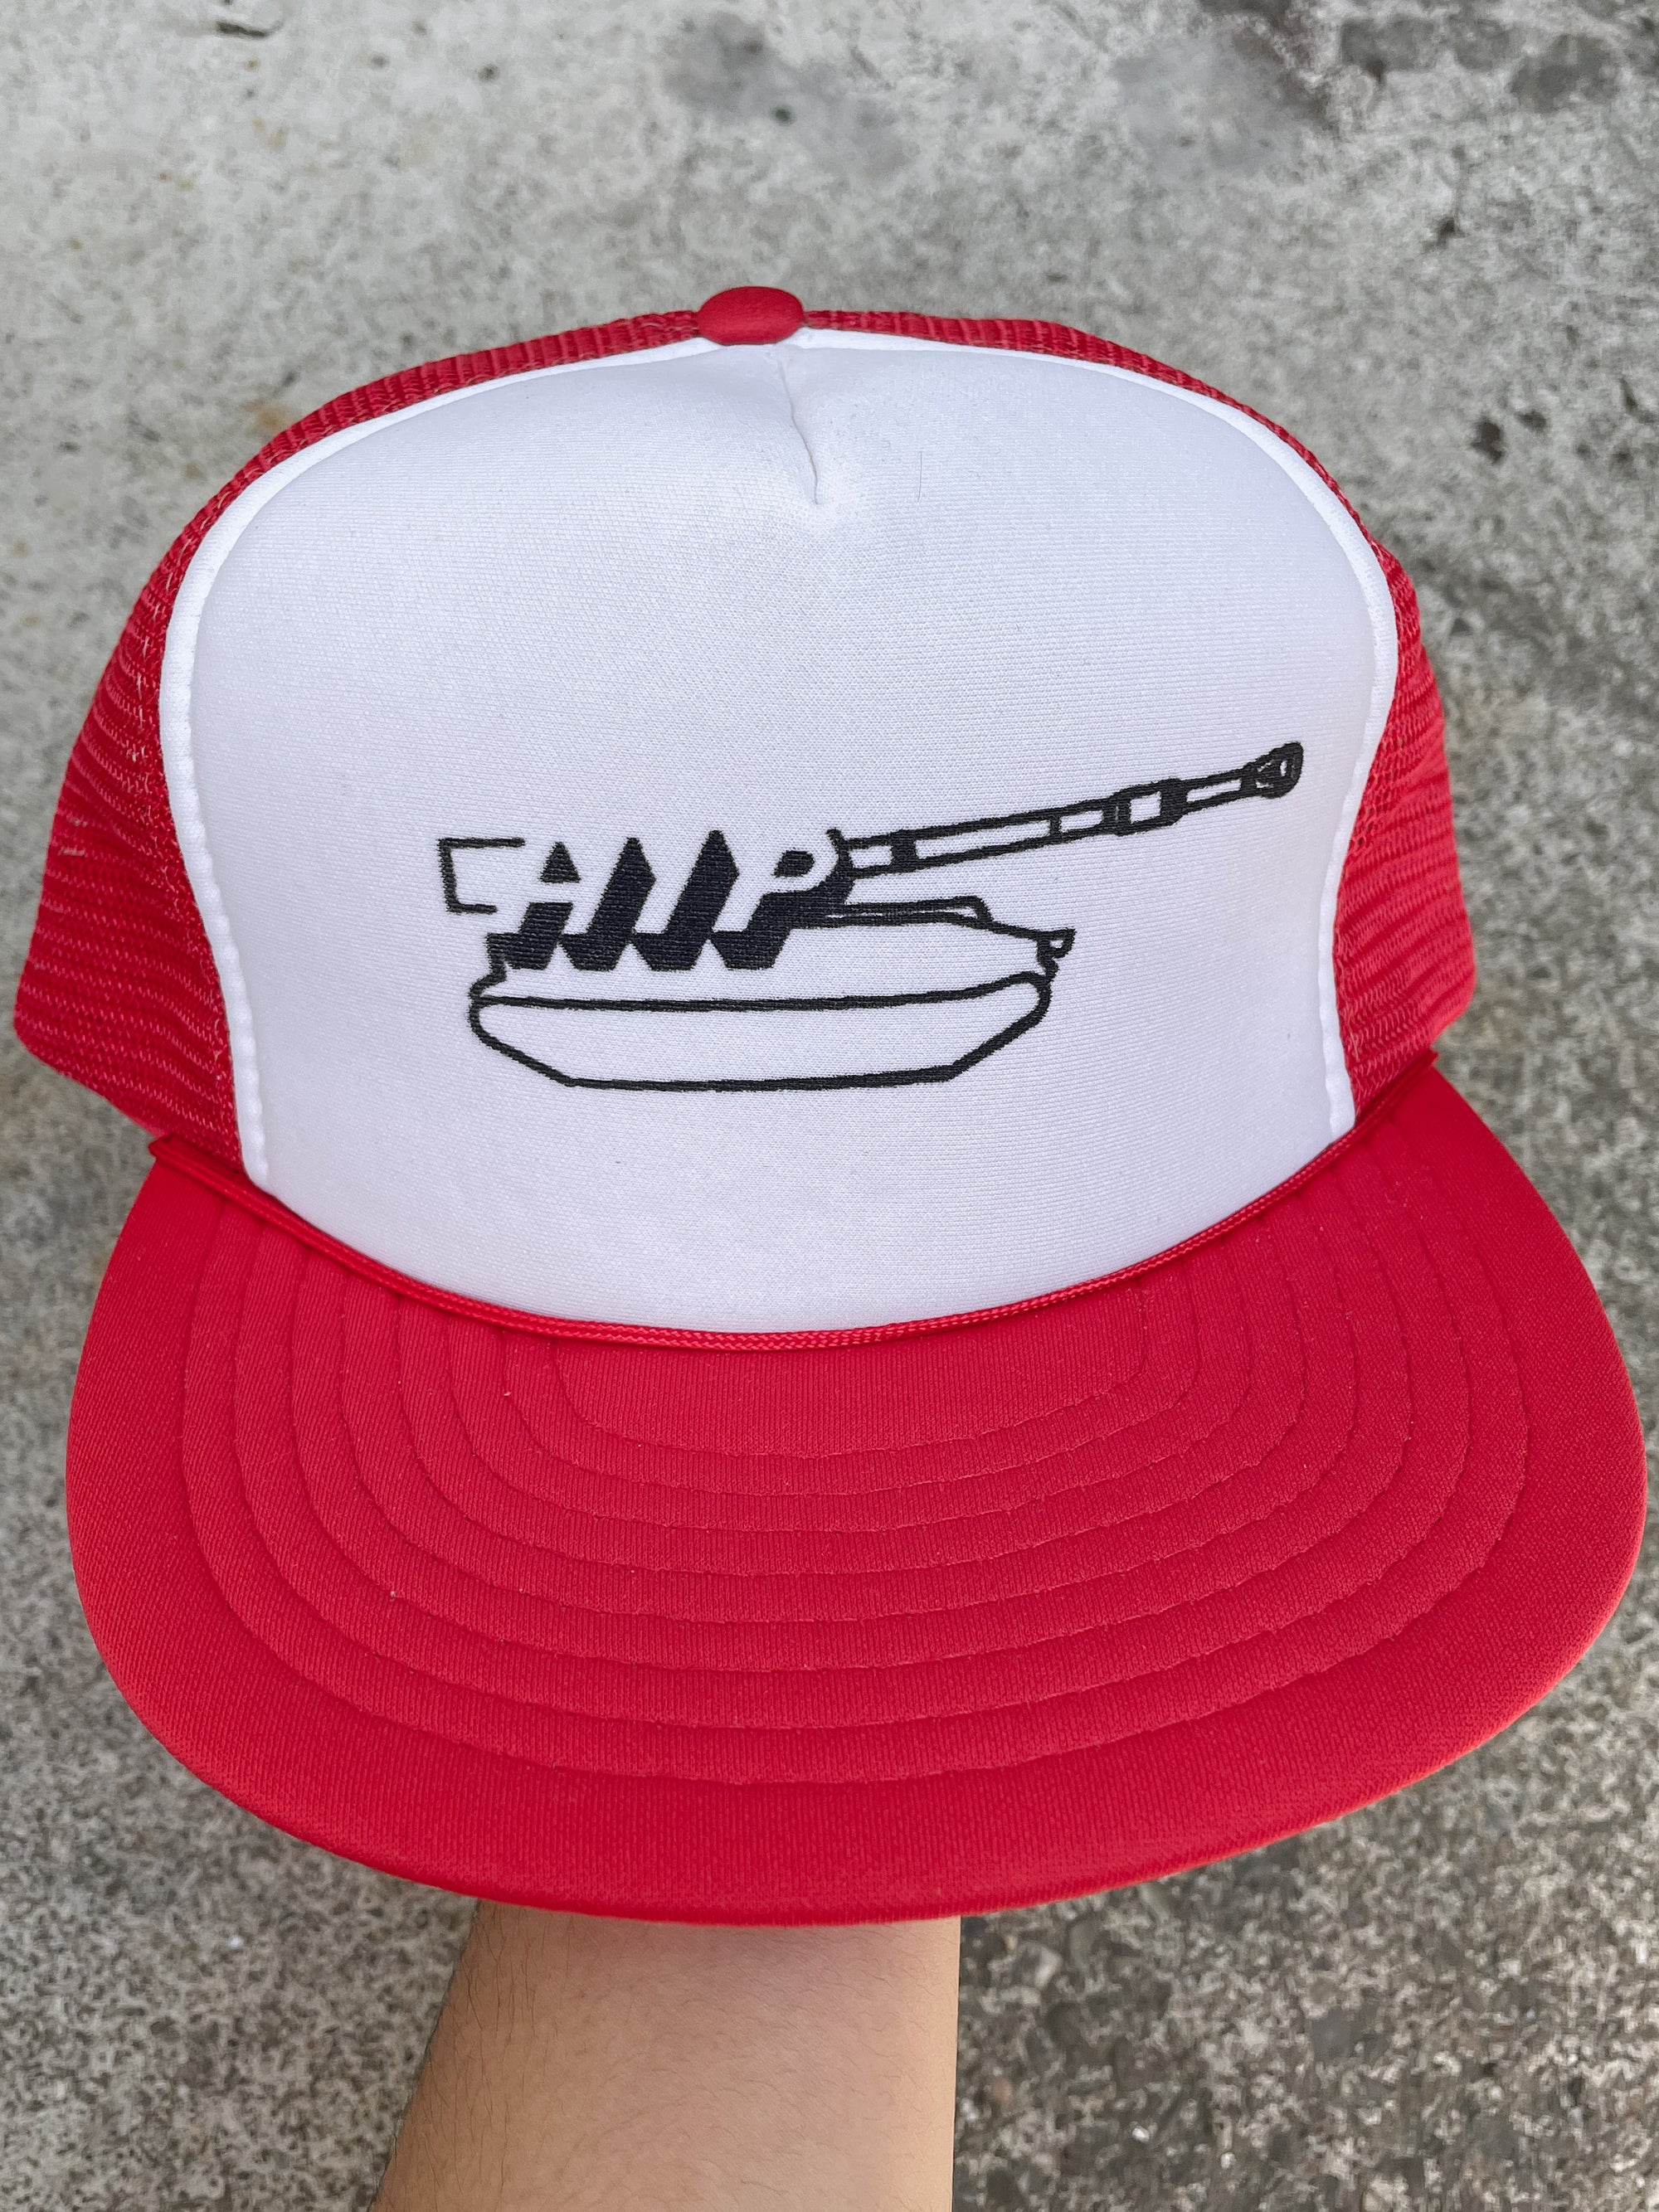 1990s “HIP” Trucker Hat